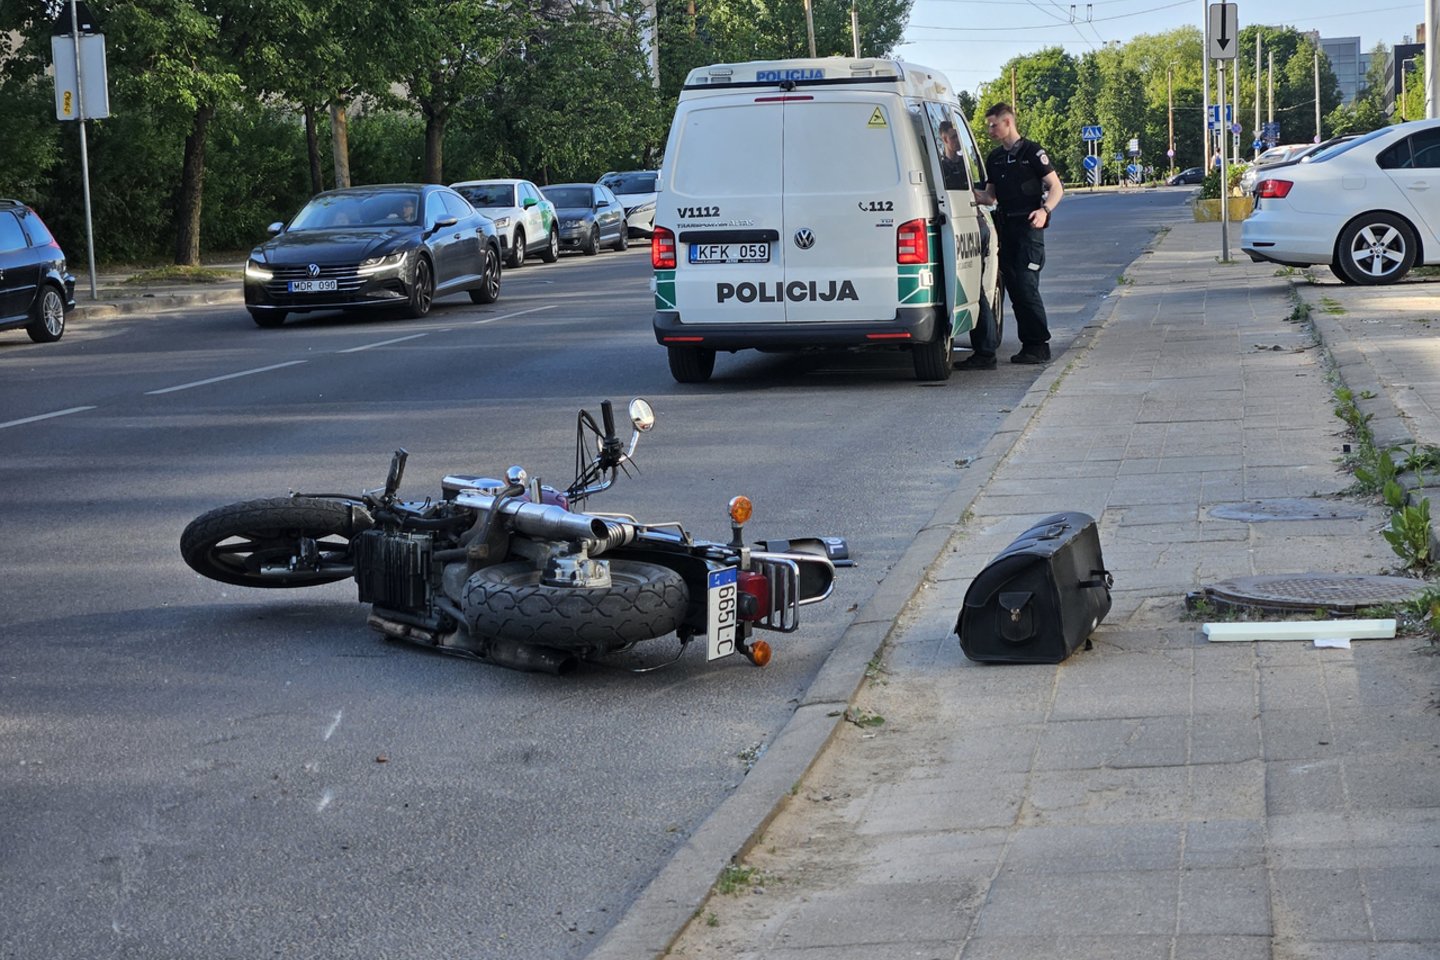  Vilniuje motociklą partrenkė automobilis „Subaru“.<br> Įvykio liudininko nuotr.